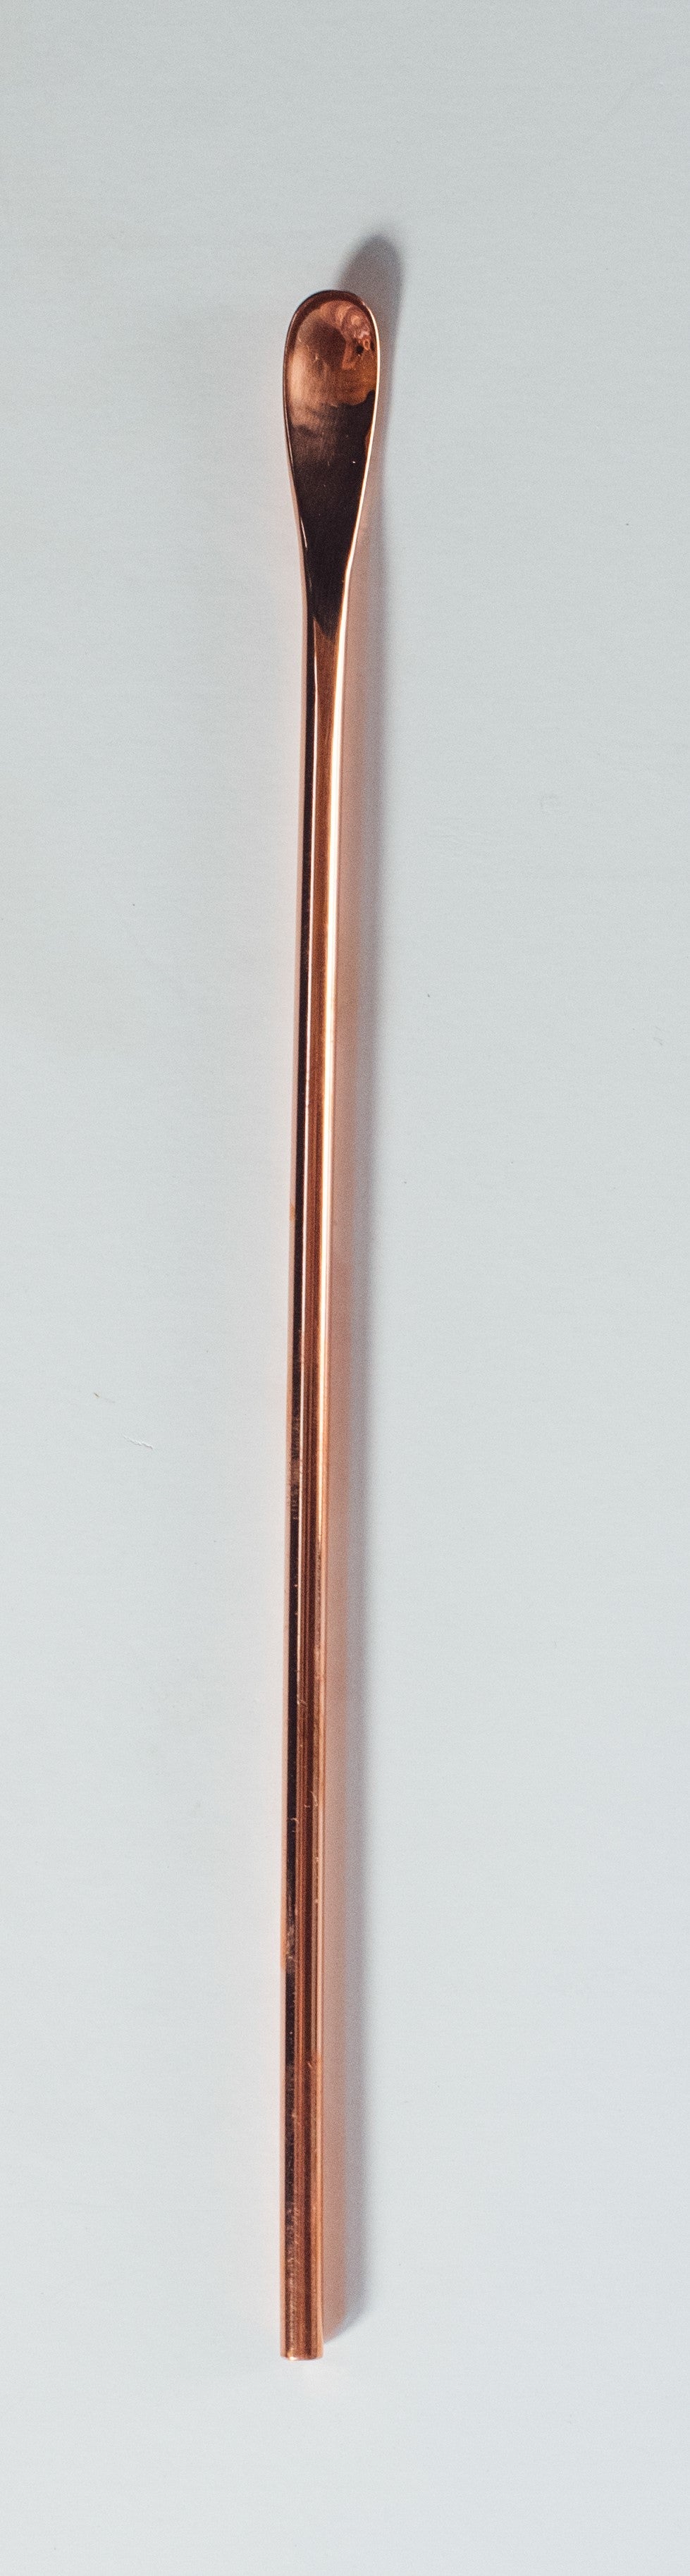 Small Copper Bar Spoon